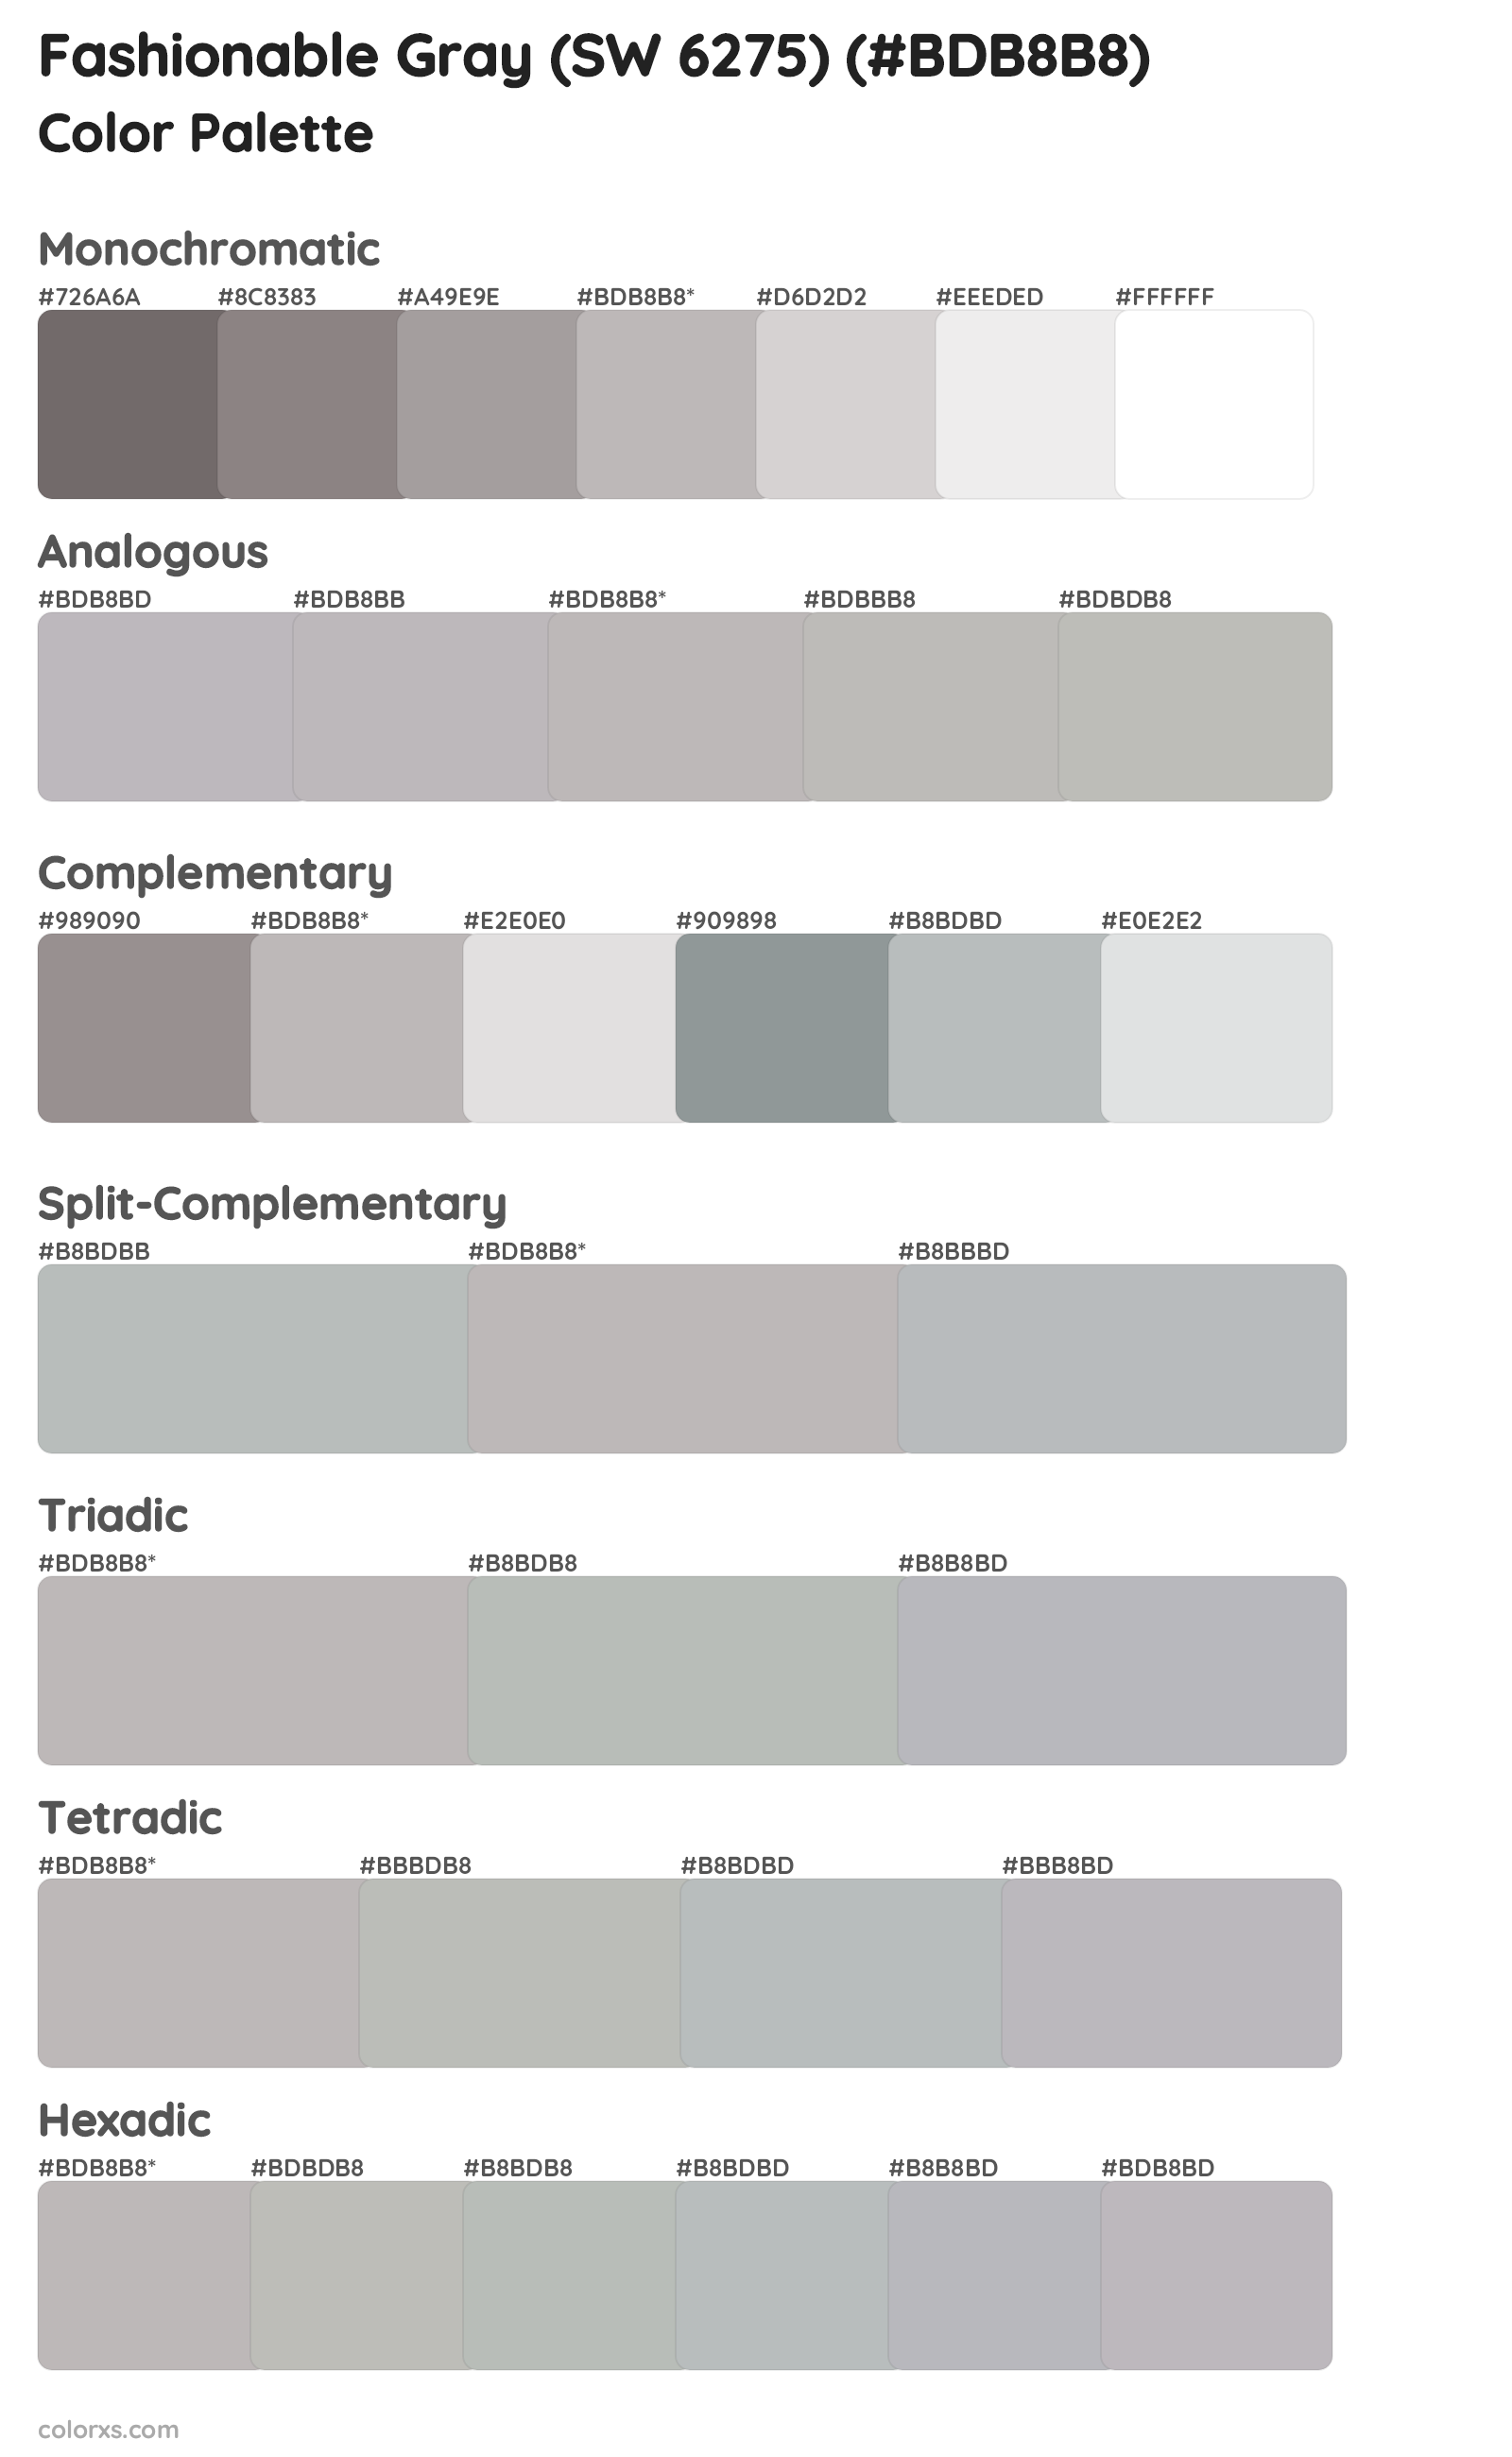 Fashionable Gray (SW 6275) Color Scheme Palettes